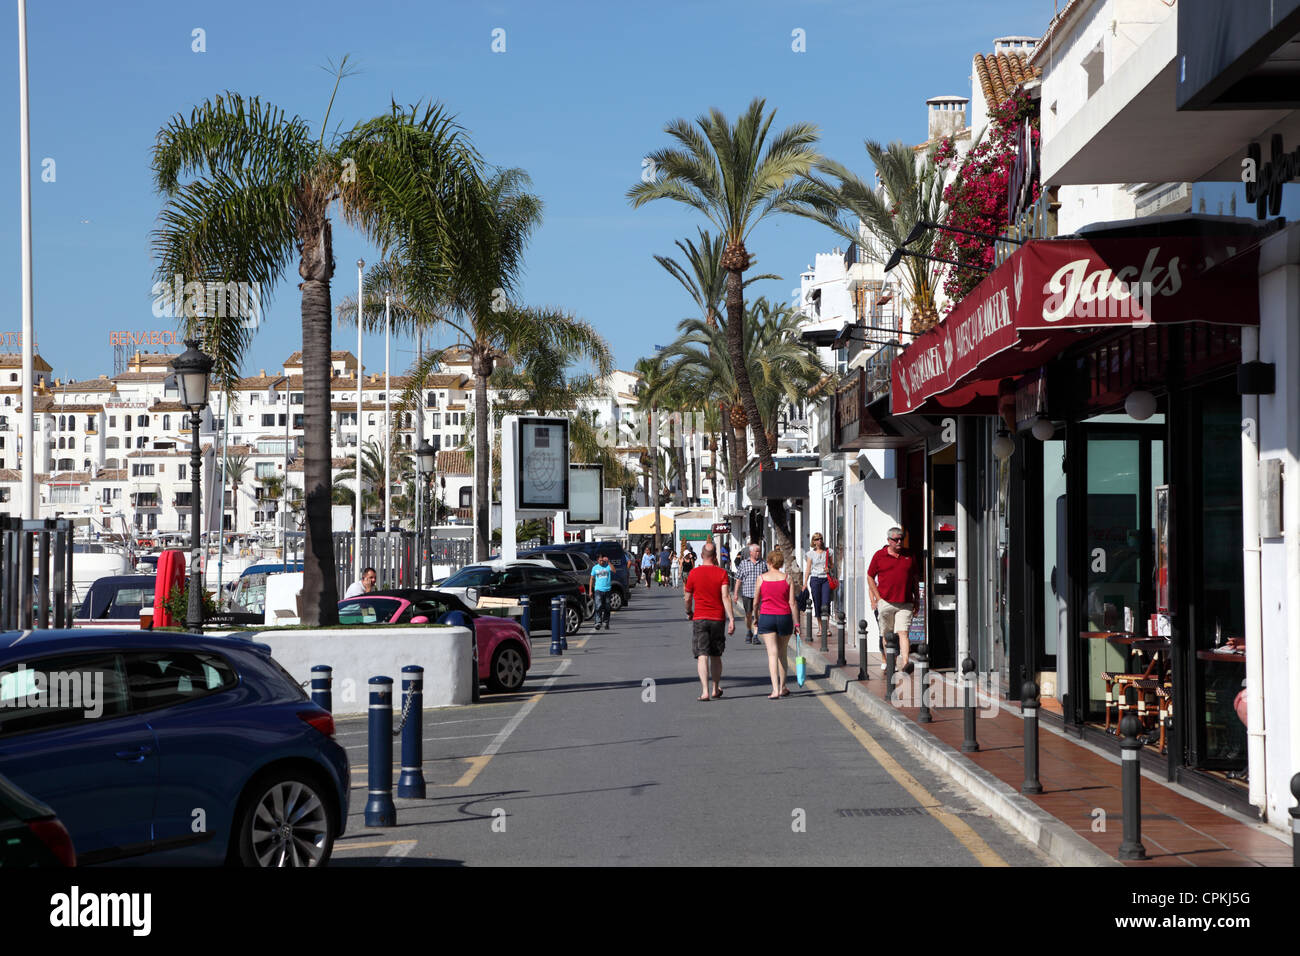 Marbella puerto banus fotografías e imágenes de alta resolución - Alamy